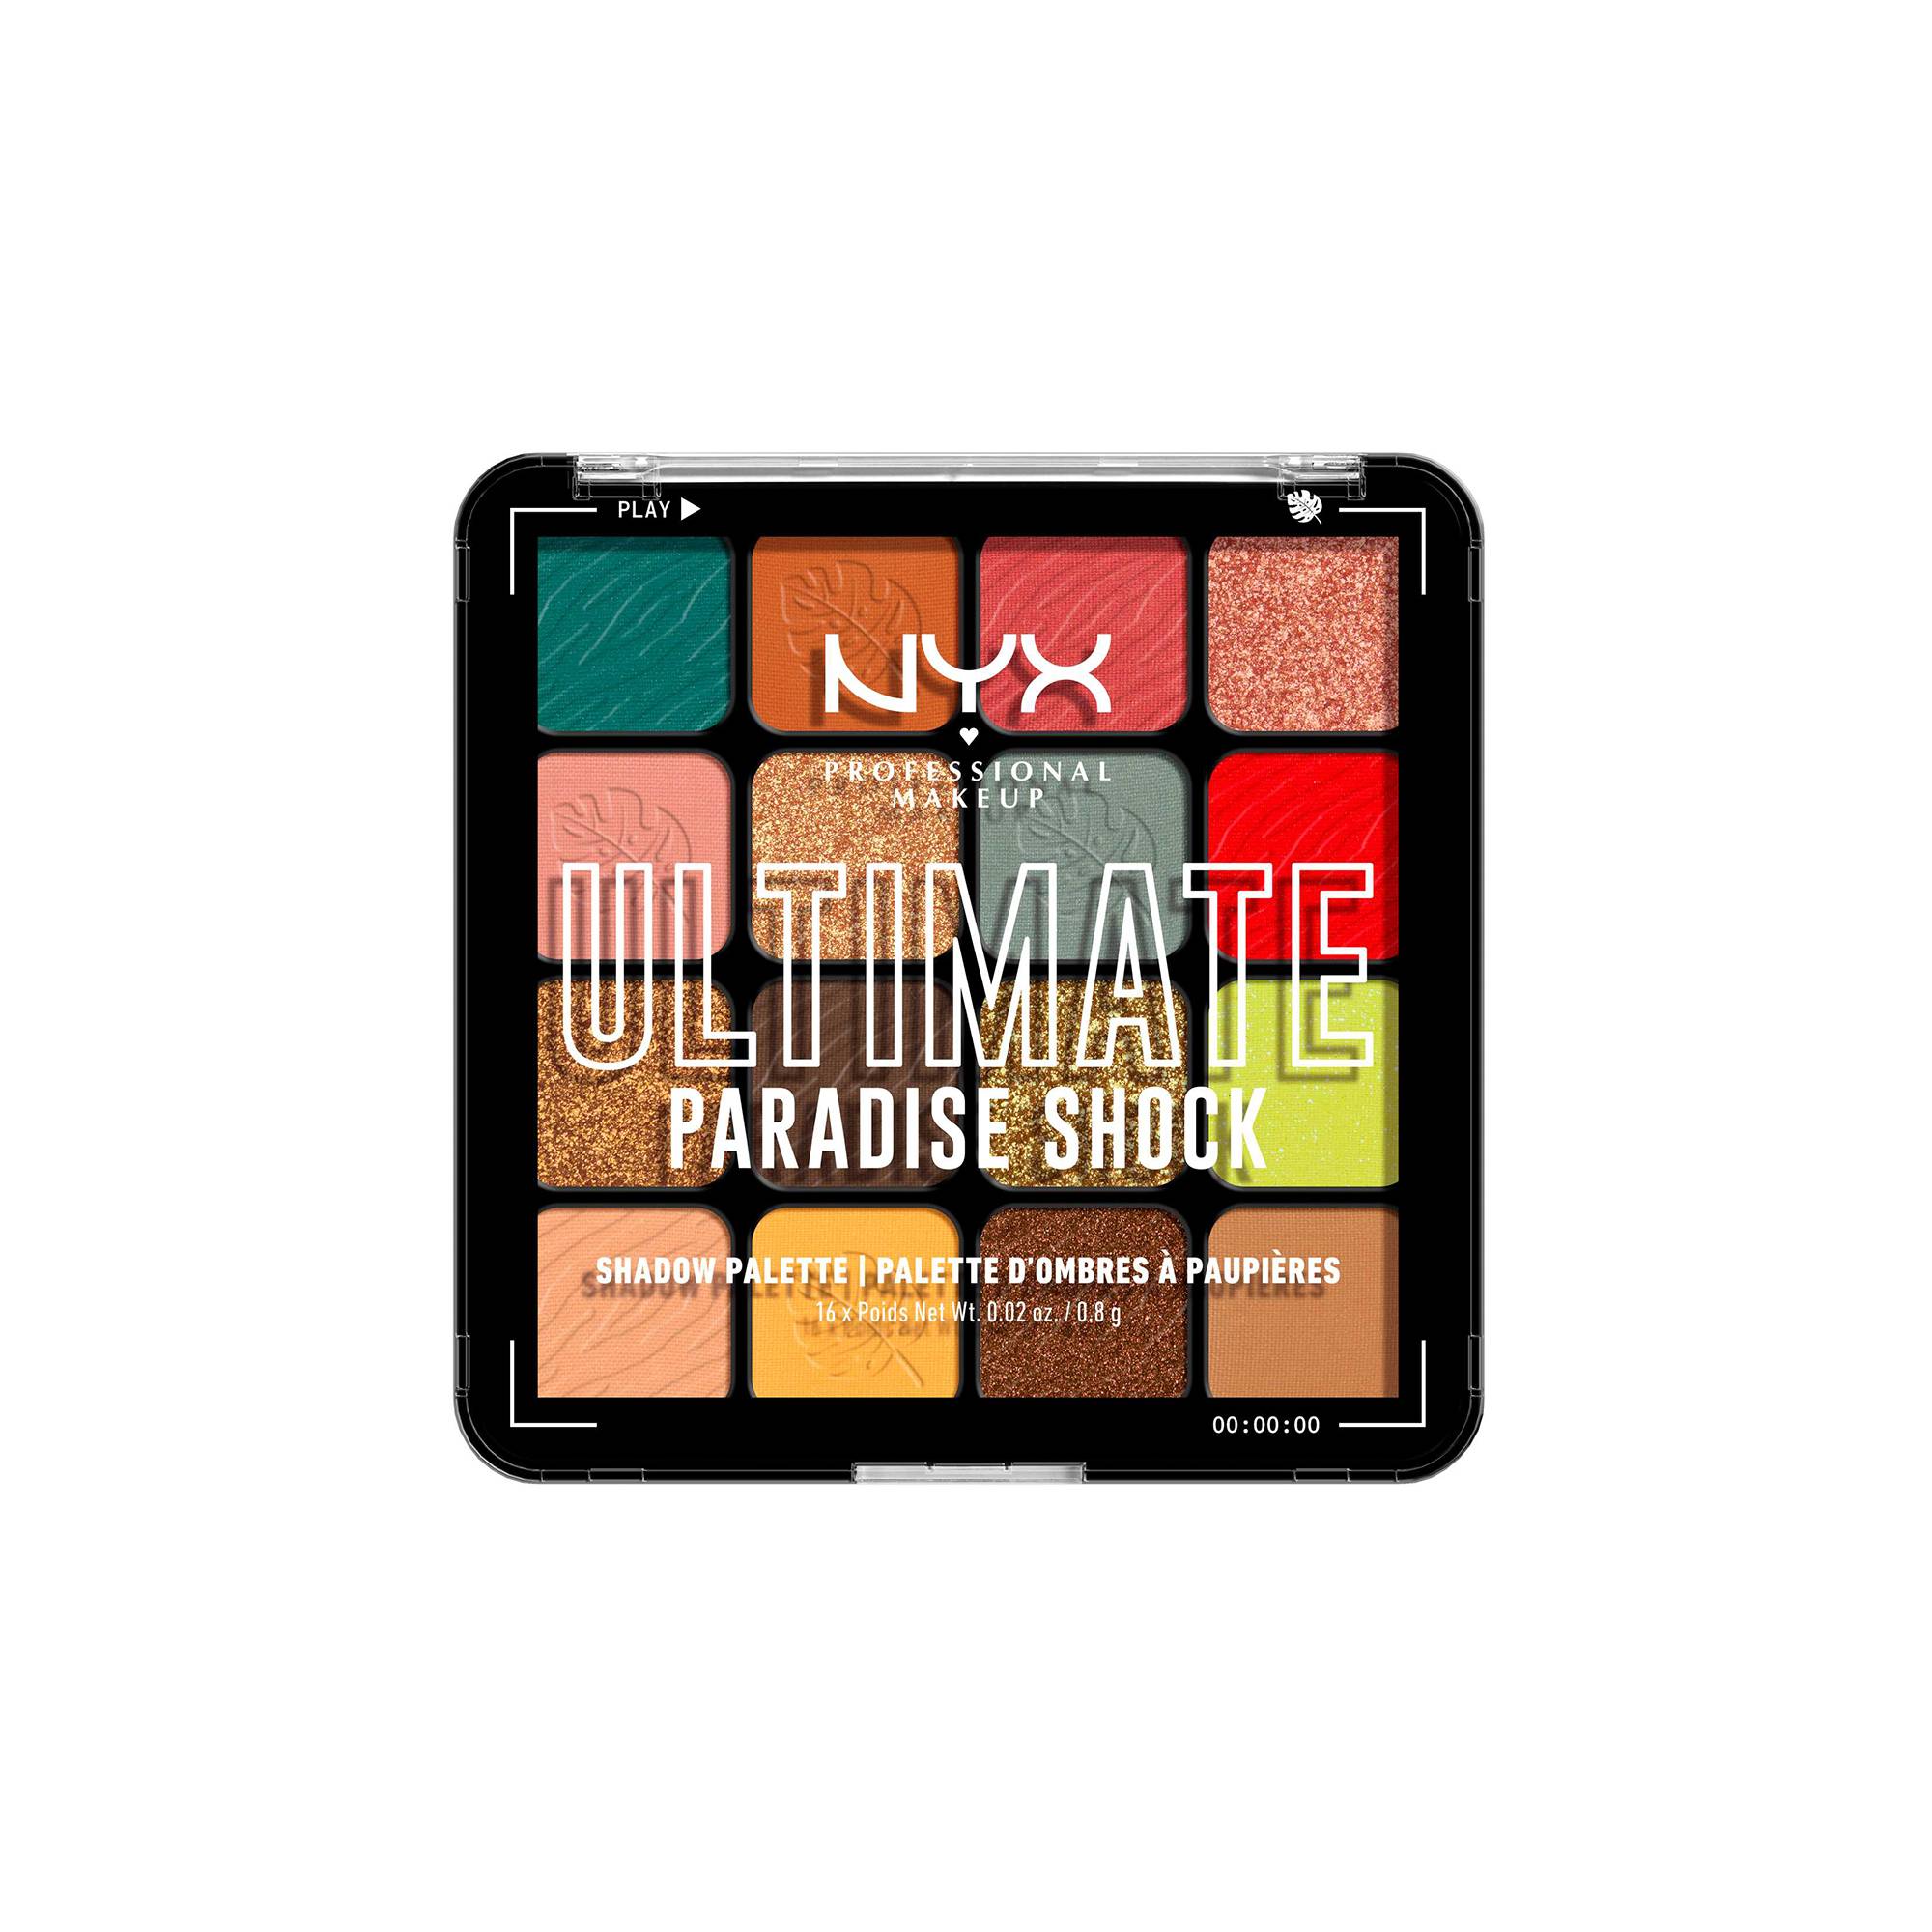 Palette 16 fards à paupières Ultimate Paradise Shock de la marque NYX Professional Makeup Contenance 108g - 1